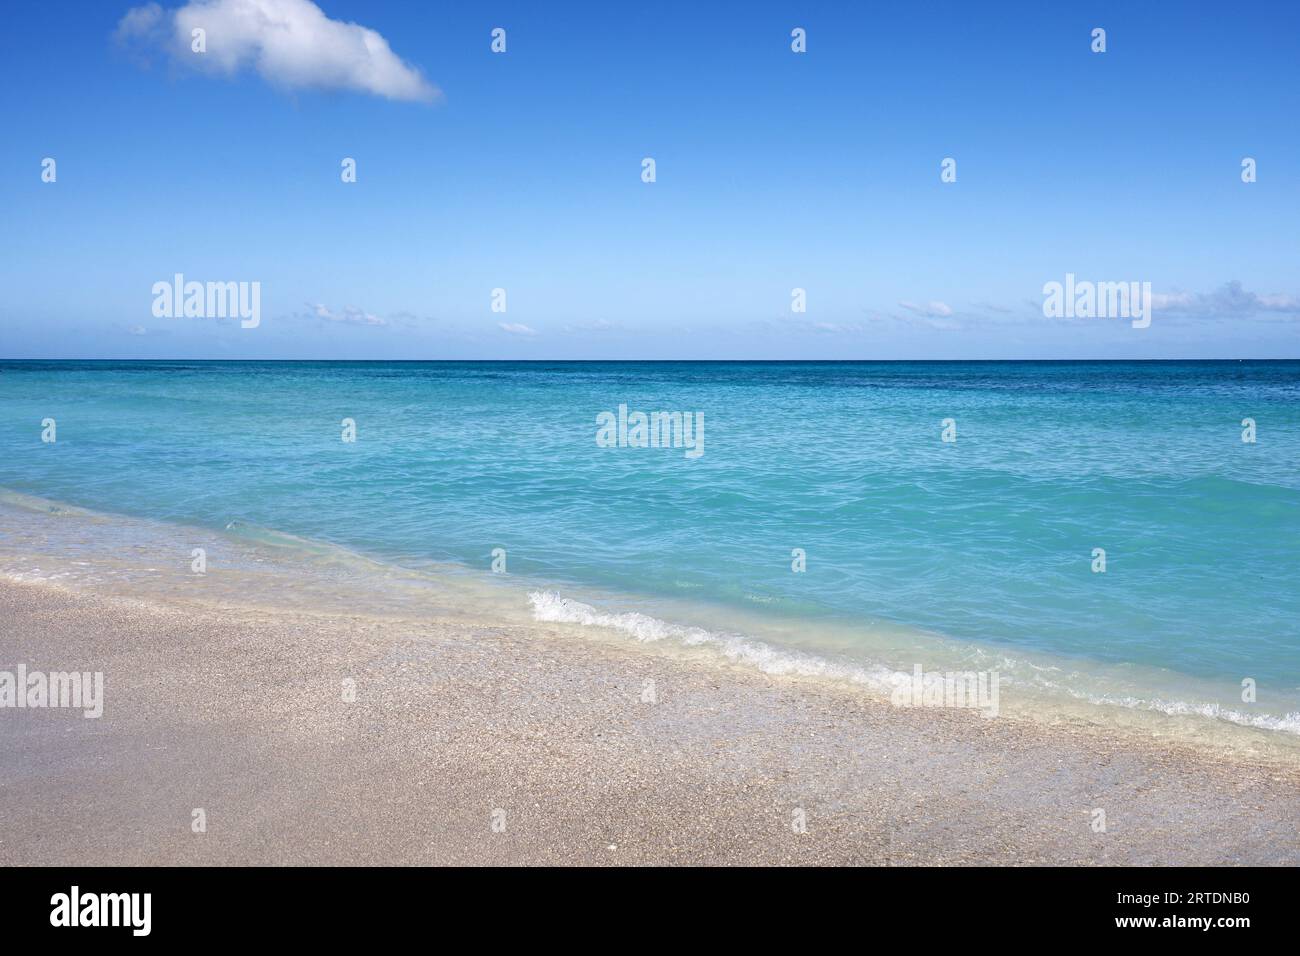 Plage de mer vide avec sable blanc, vue sur les vagues azur et le ciel bleu avec nuage. Côte caribéenne, fond pour des vacances sur une nature paradisiaque Banque D'Images